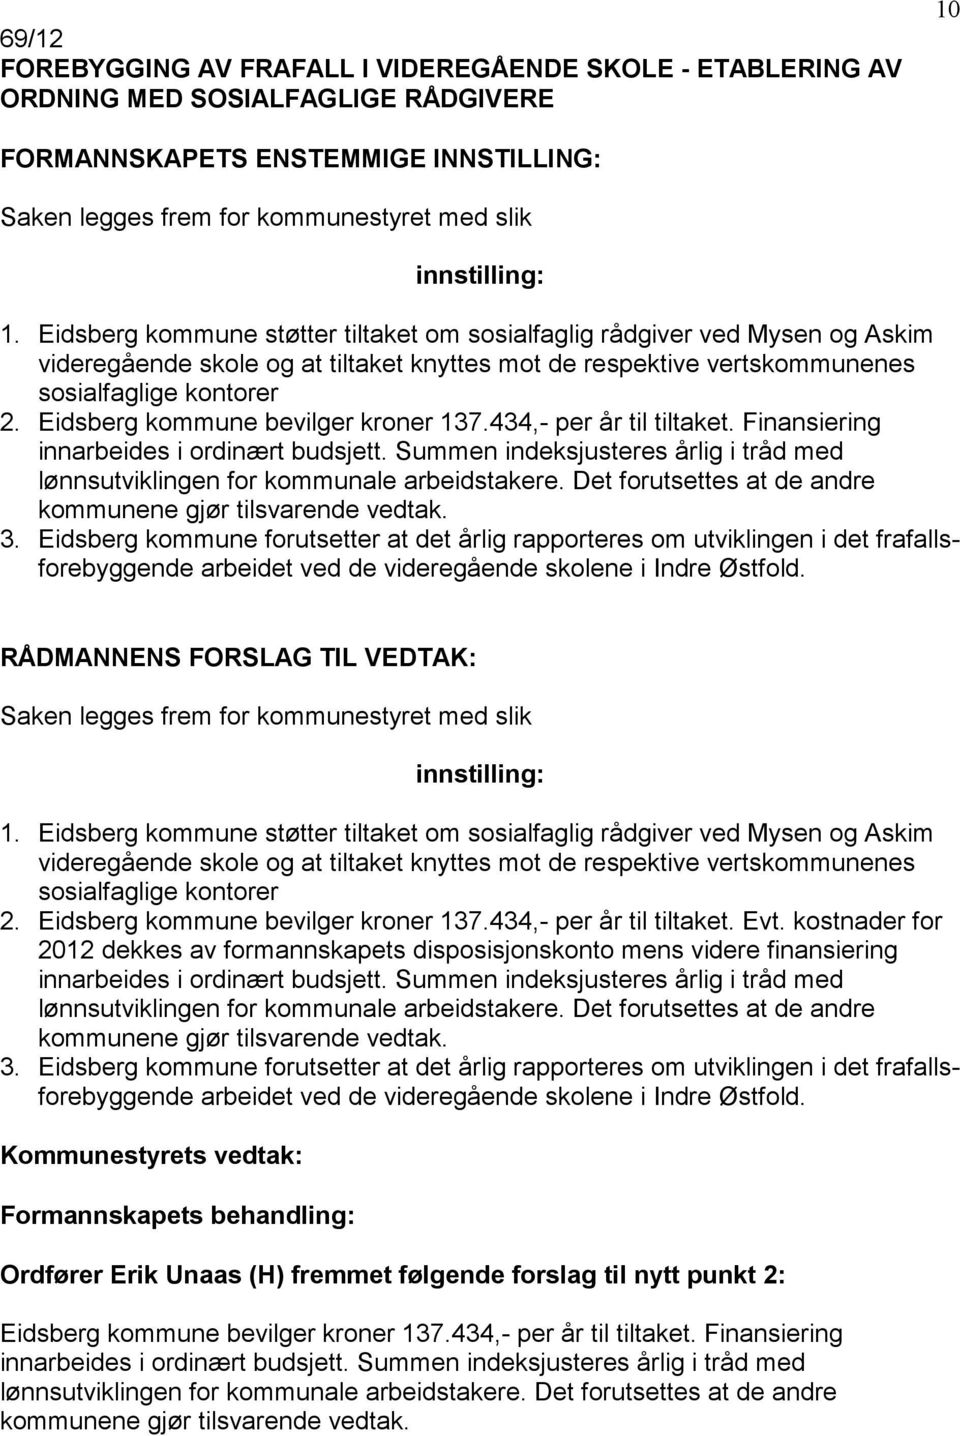 Eidsberg kommune bevilger kroner 137.434,- per år til tiltaket. Finansiering innarbeides i ordinært budsjett. Summen indeksjusteres årlig i tråd med lønnsutviklingen for kommunale arbeidstakere.